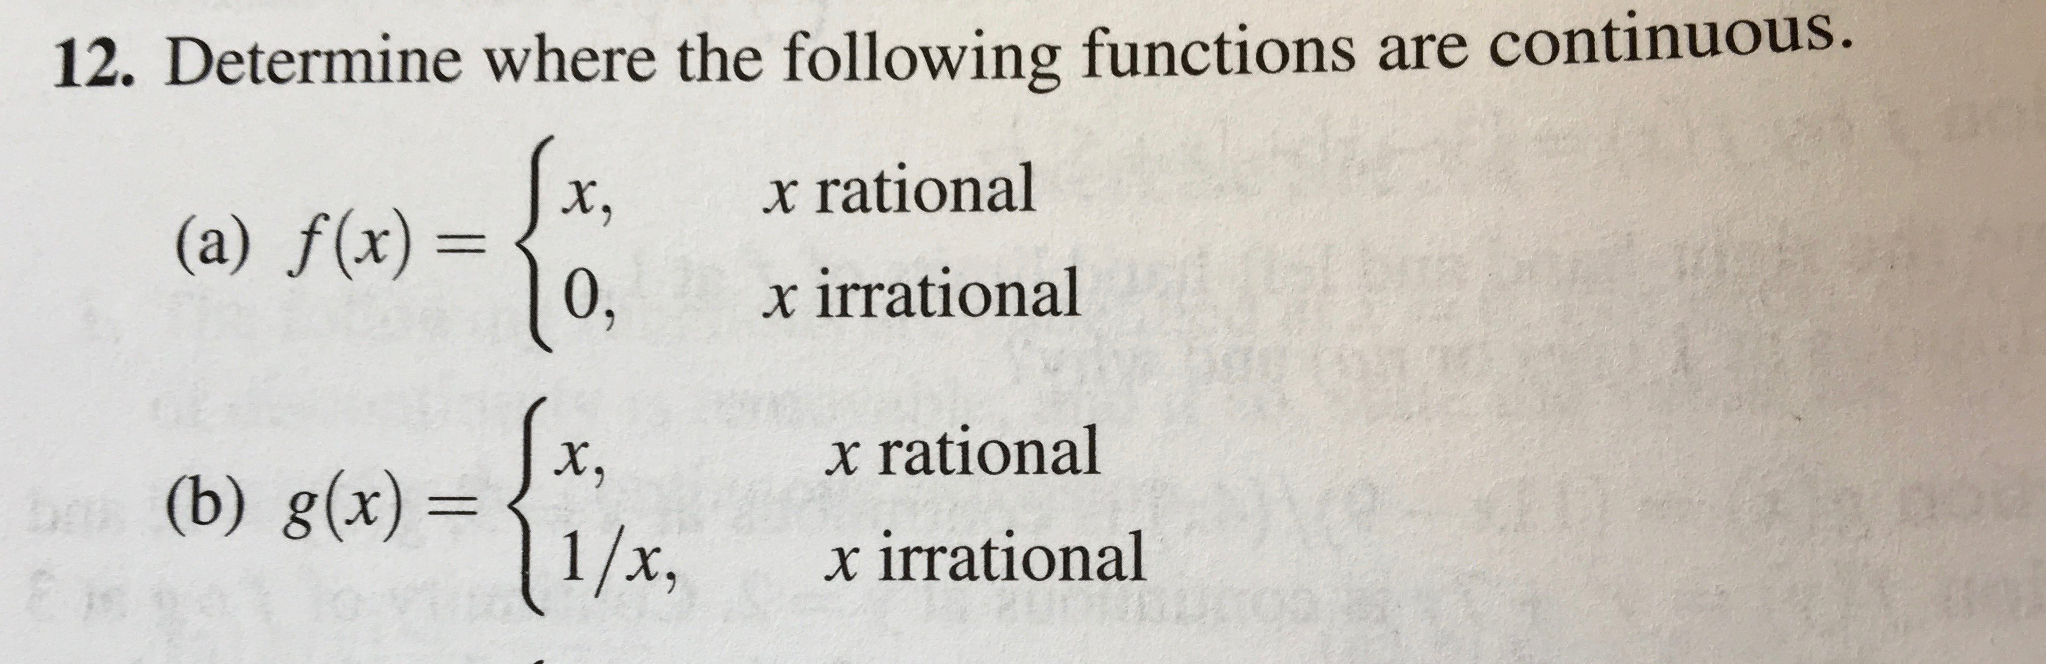 ダウンロード済み F X 0 If X Is Rational 1 If X Is Irrational Graph 悪魔 イラスト無料